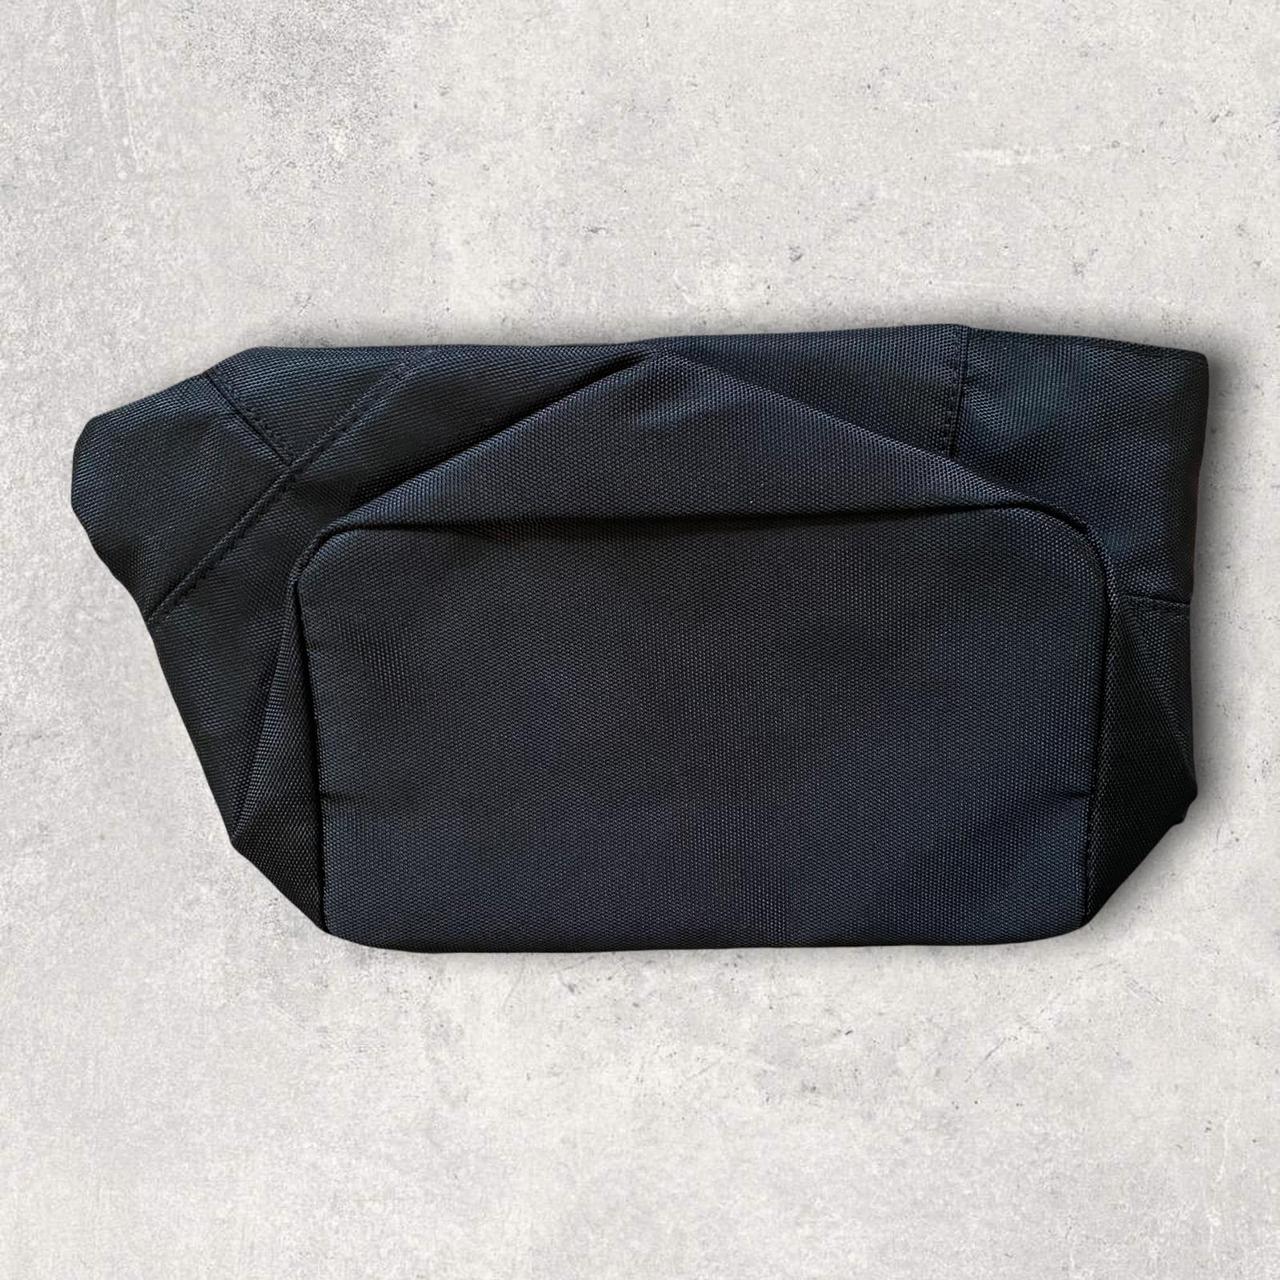 Product Image 3 - Empirio Armani Perfume Black Bag